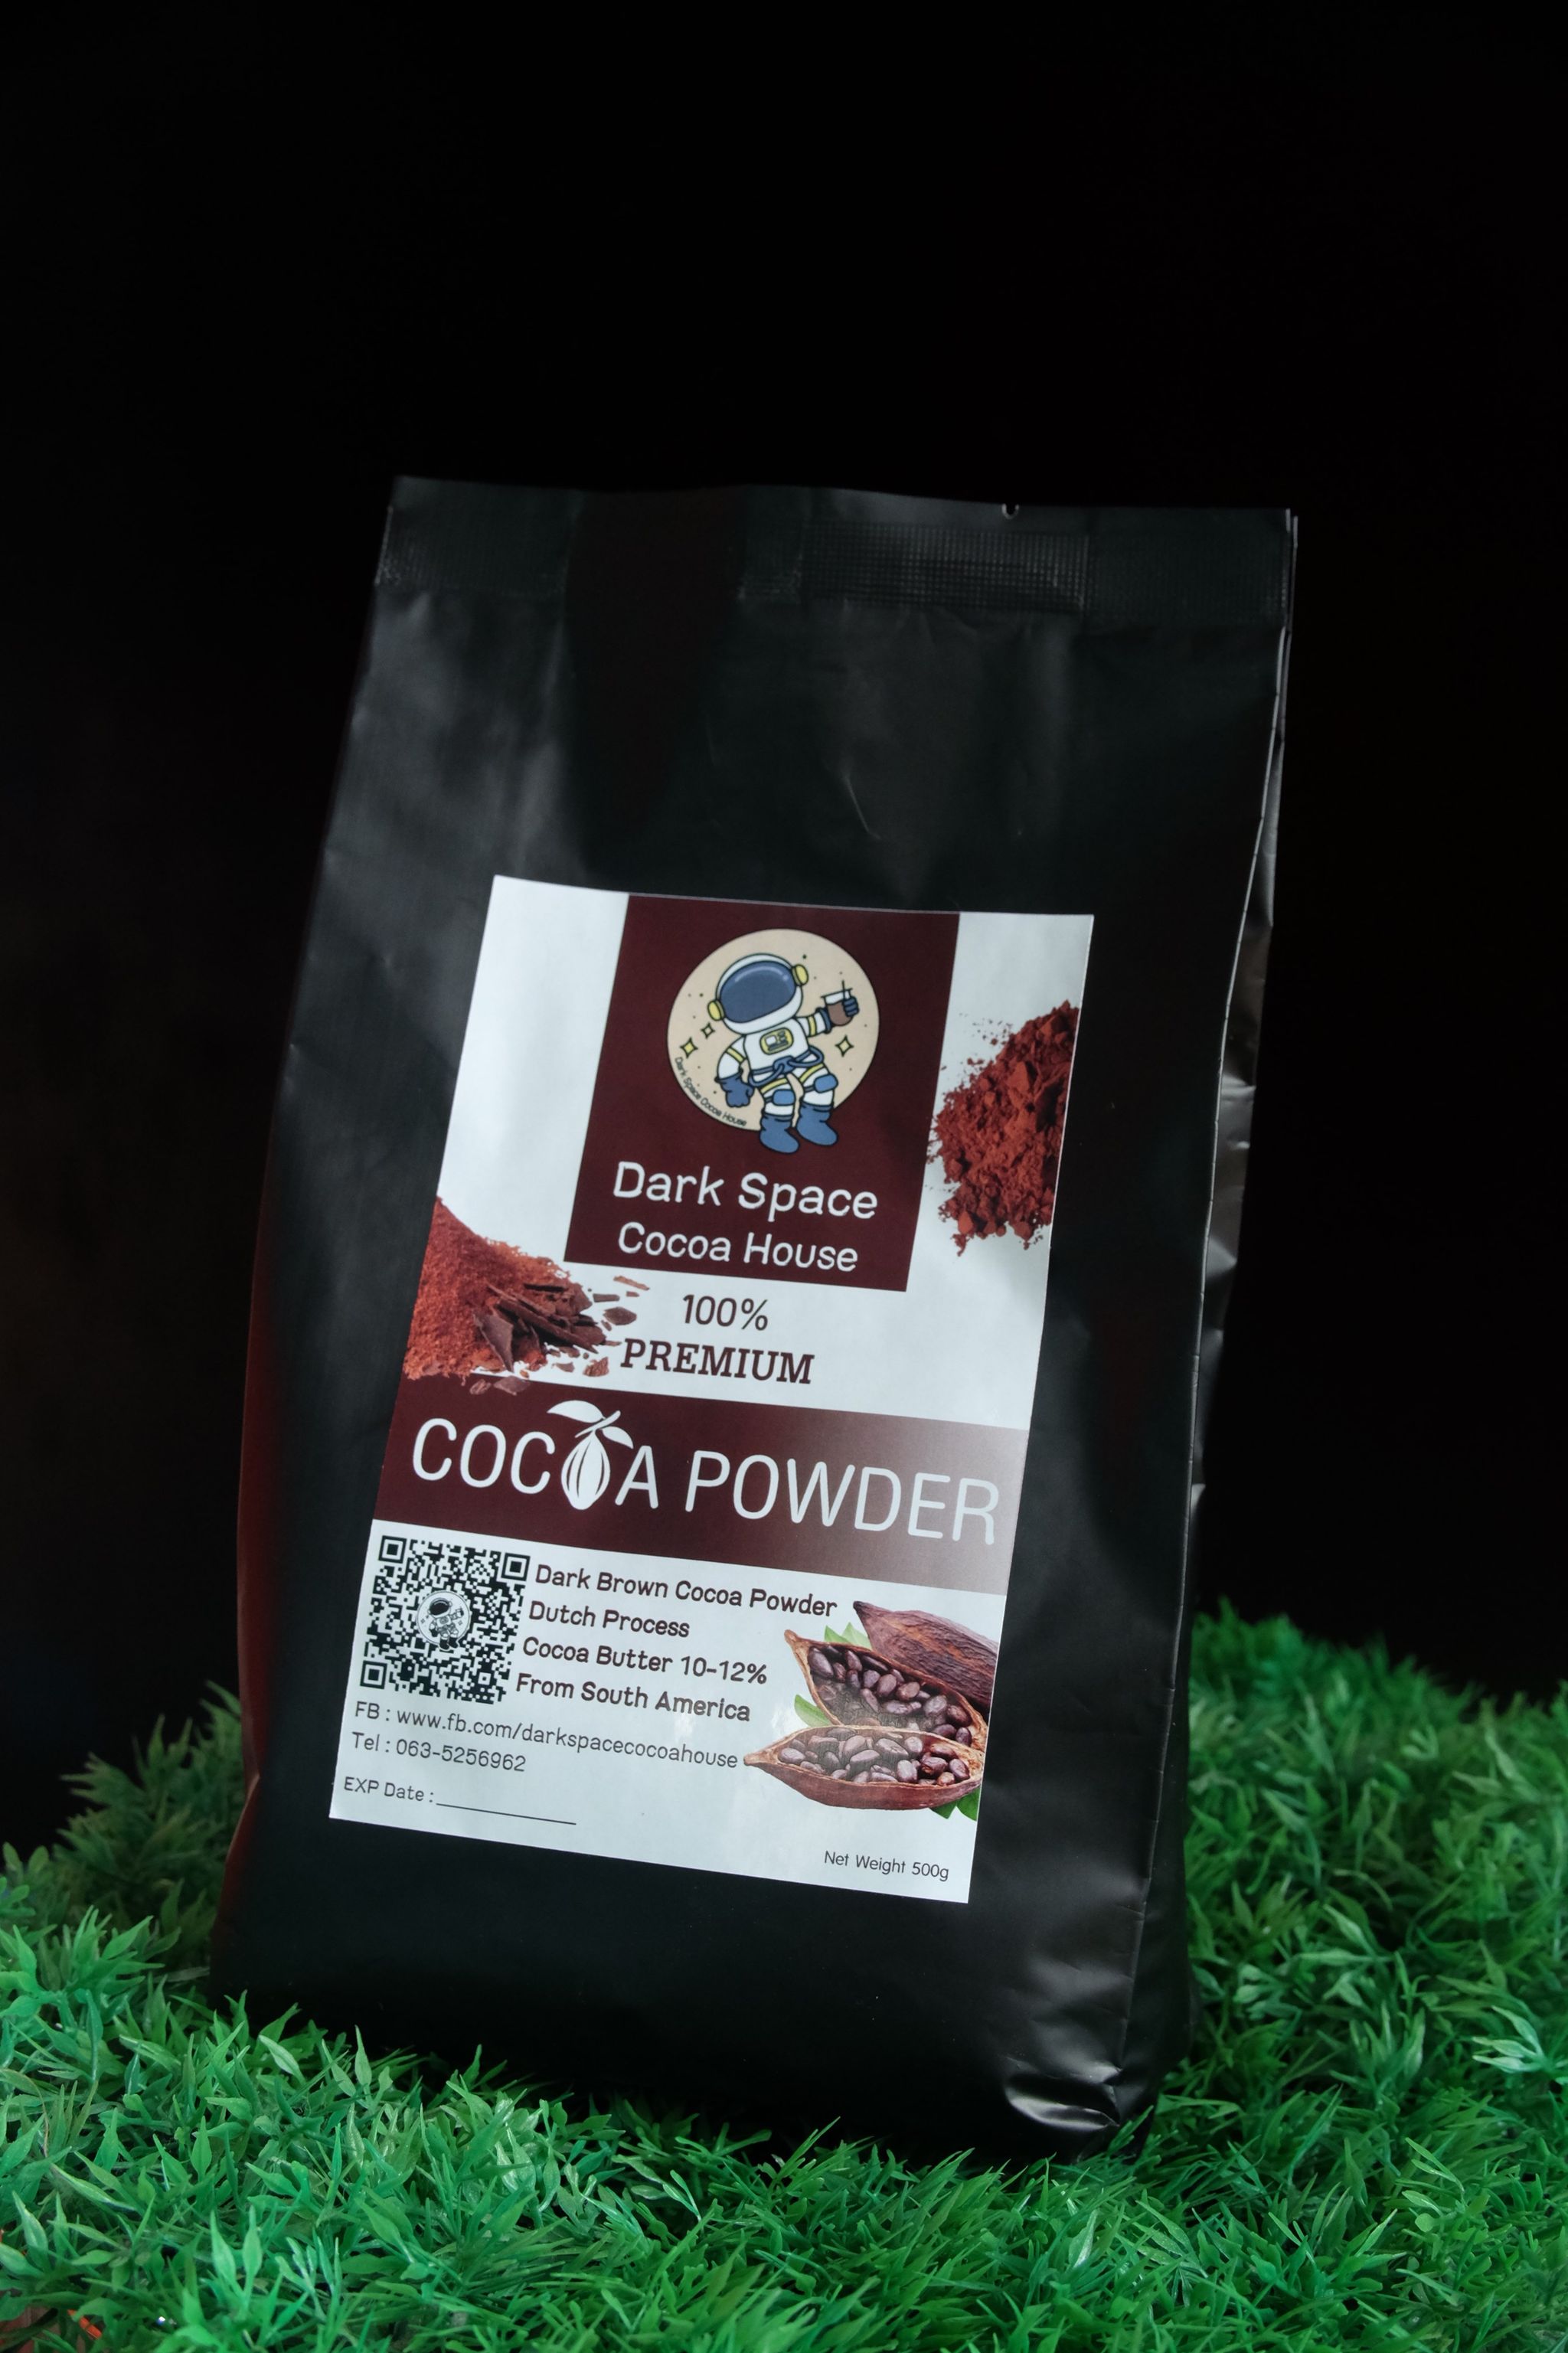 ผงโกโก้ Dark Space Cocoa House 500g โกโก้ผง 100% Premium Cocoa เข้มข้น มีกลิ่นหอมช็อคโกแลต Butter 10-12%